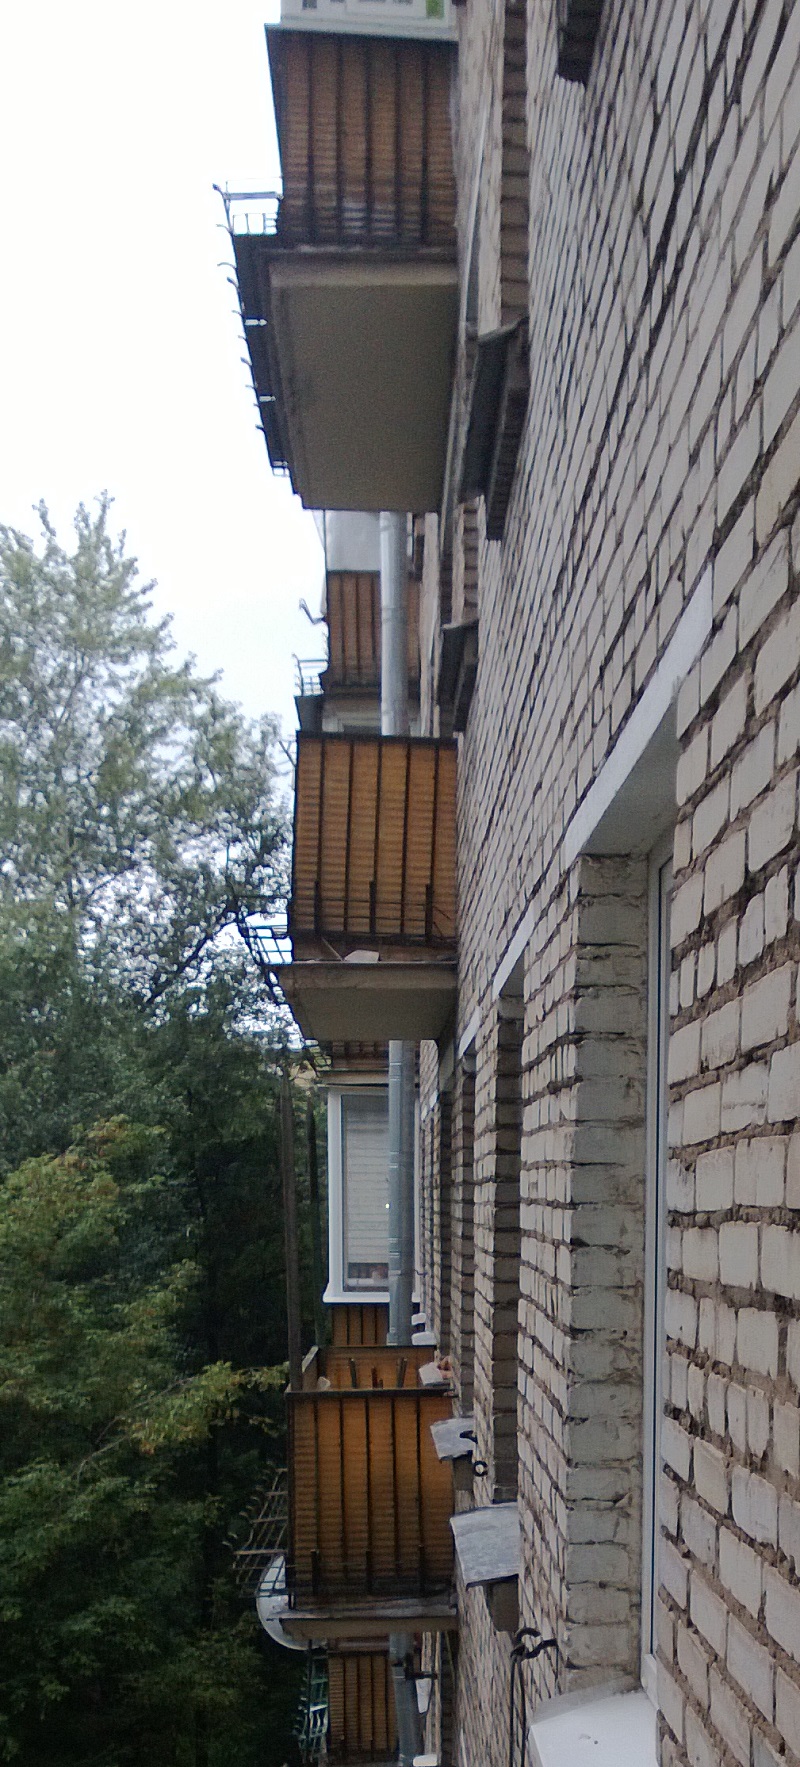 Rusting balconies